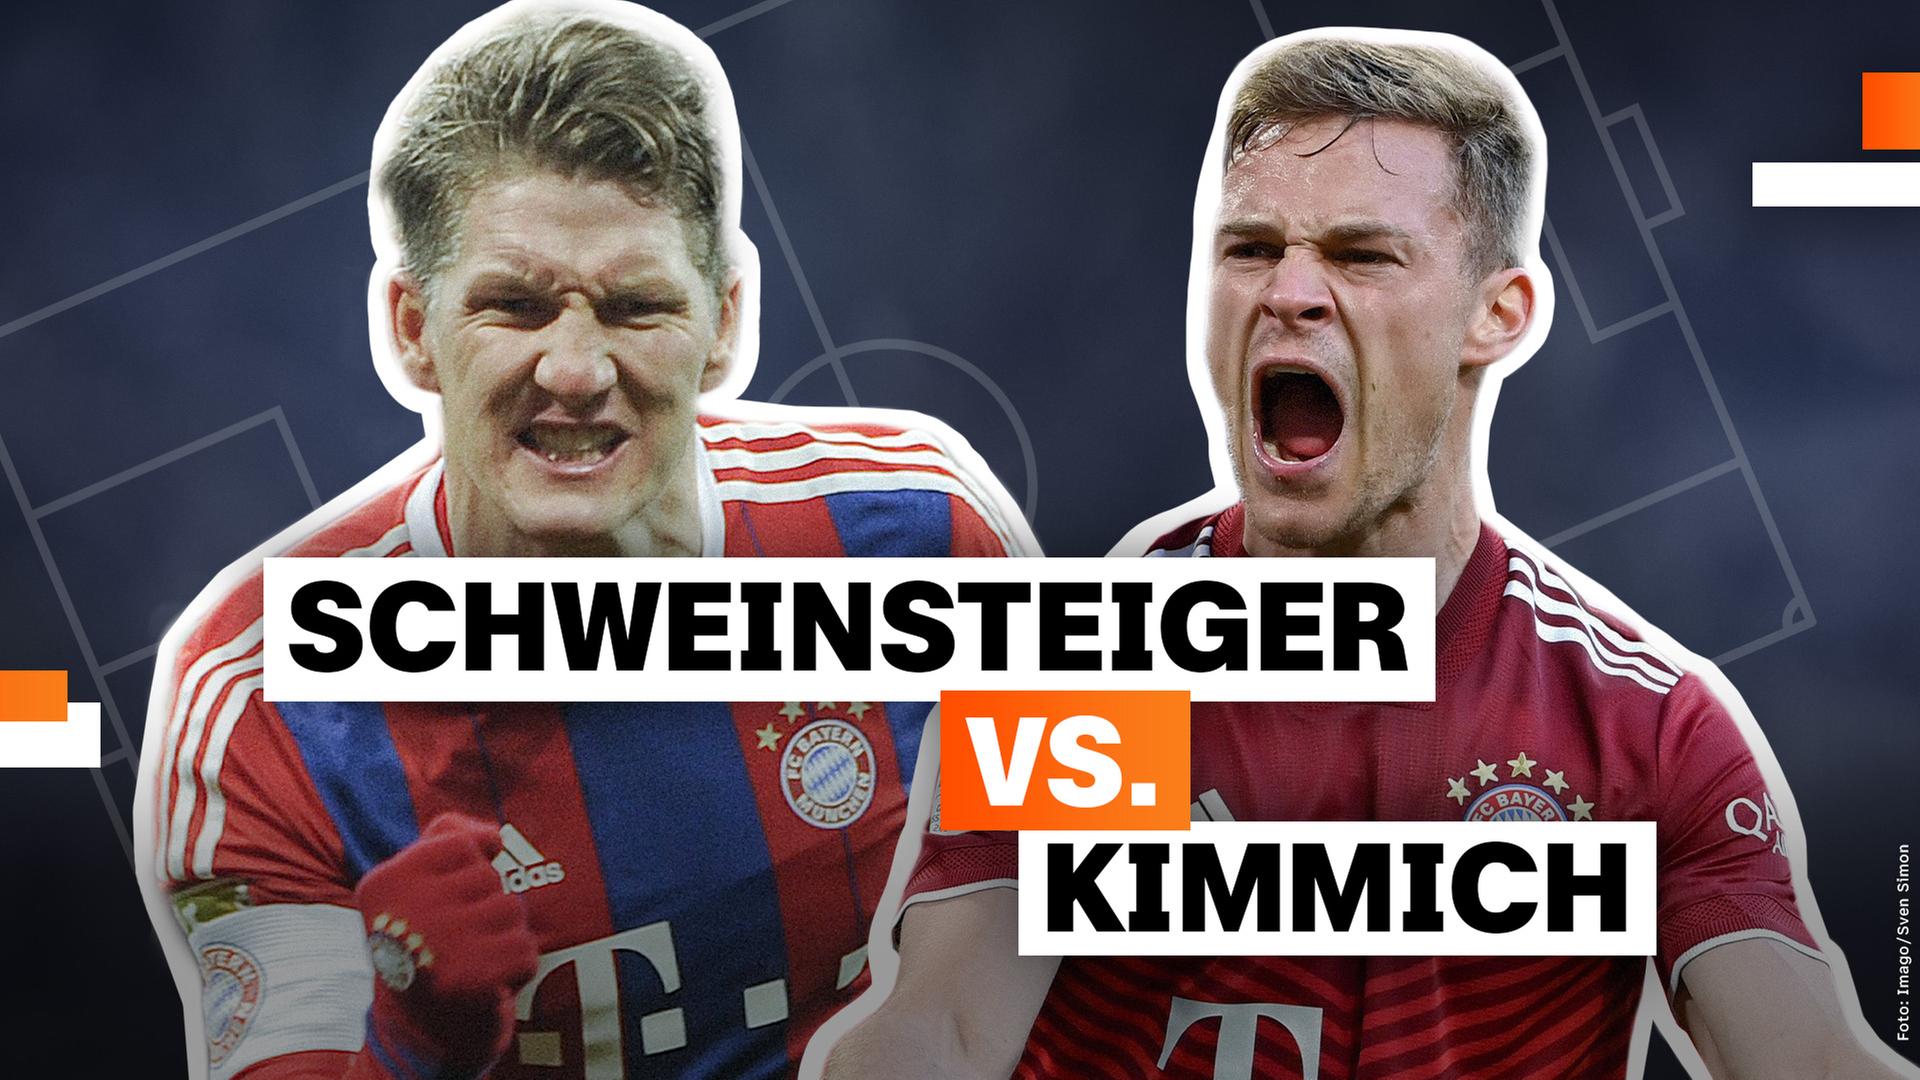 Schweinsteiger vs. Kimmich